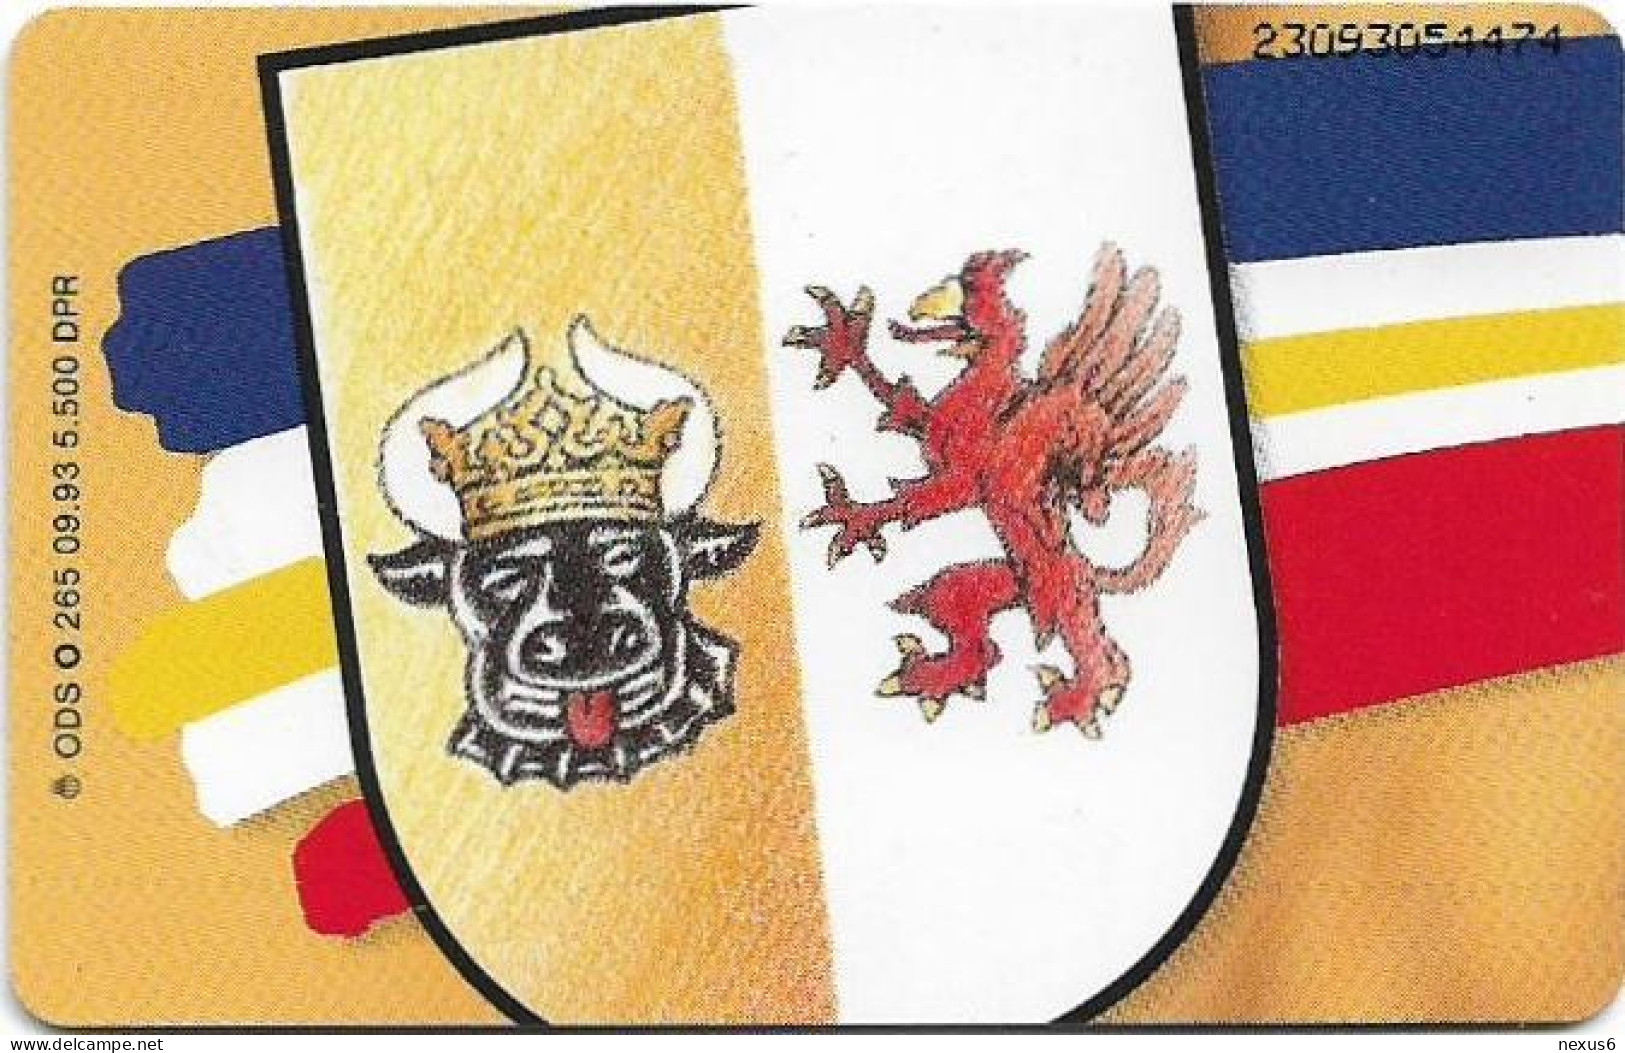 Germany - Wappen Der BRD - Mecklenburg-Vorpommern - O 0265 - 09.1993, 6DM, 5.500ex, Mint - O-Series : Series Clientes Excluidos Servicio De Colección